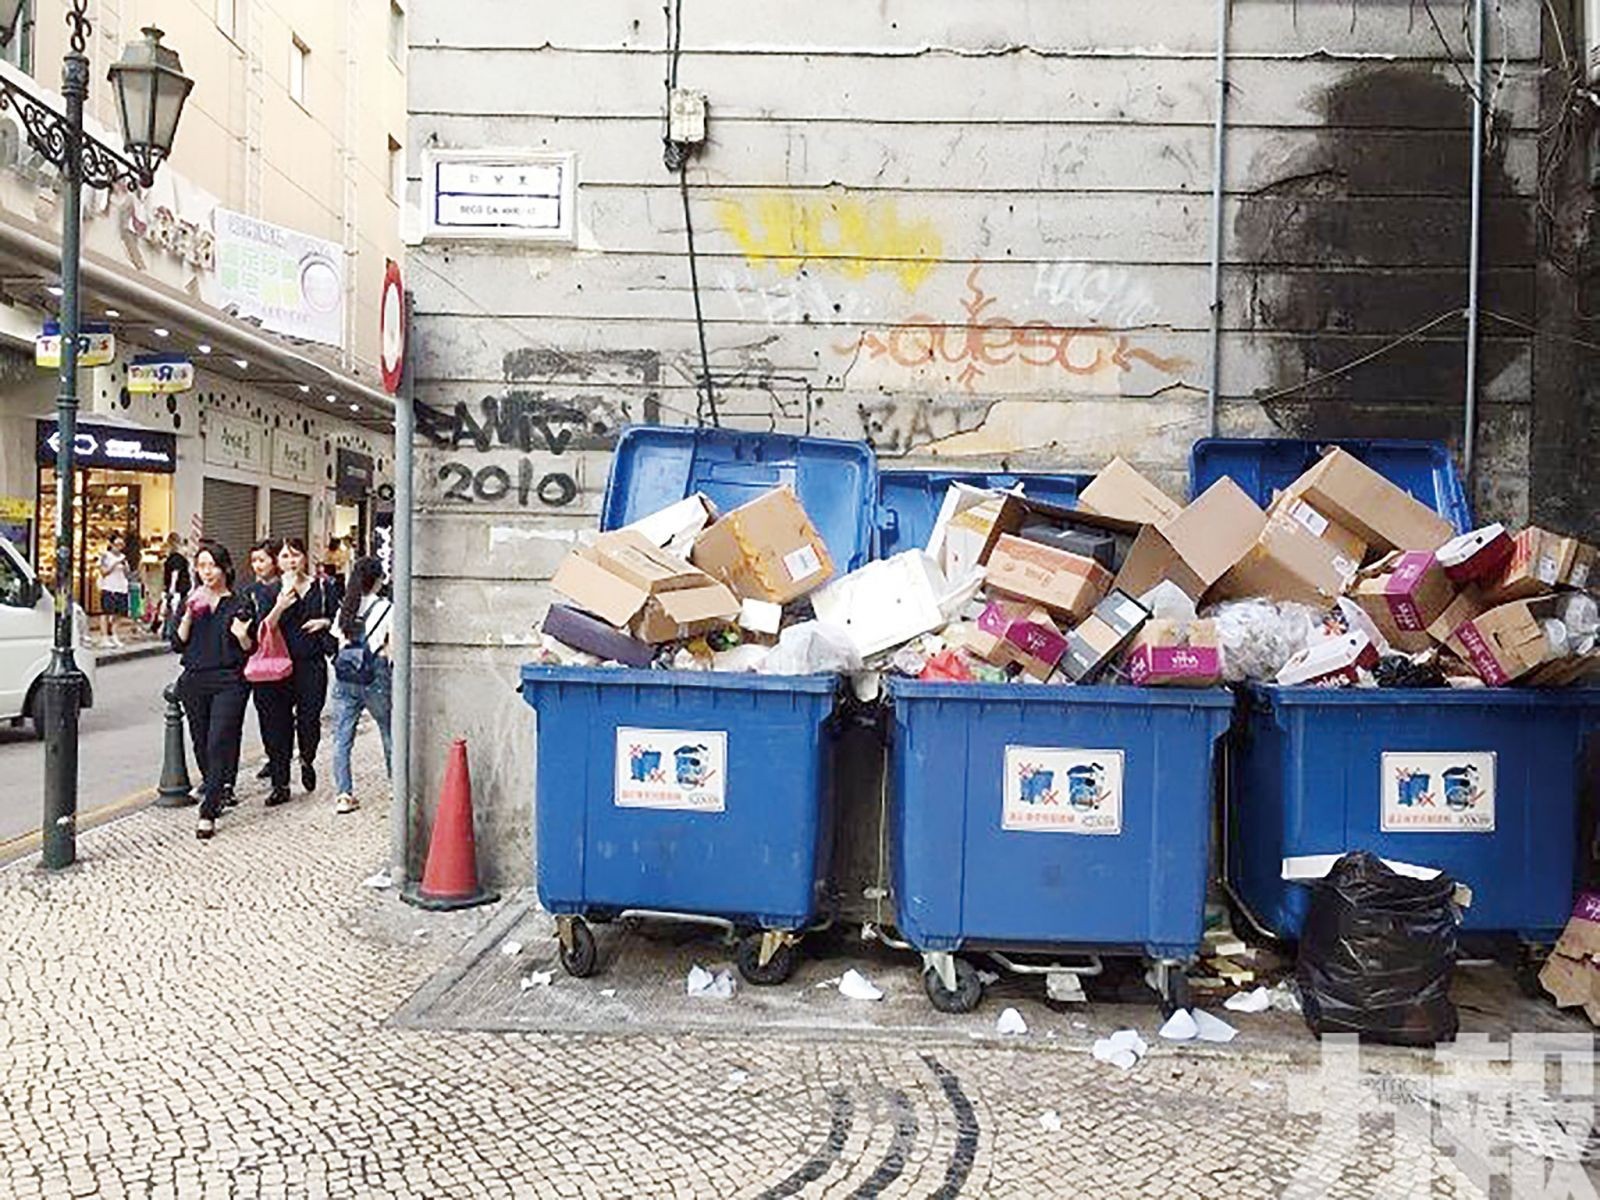 道德巷壓縮式垃圾桶站啟用